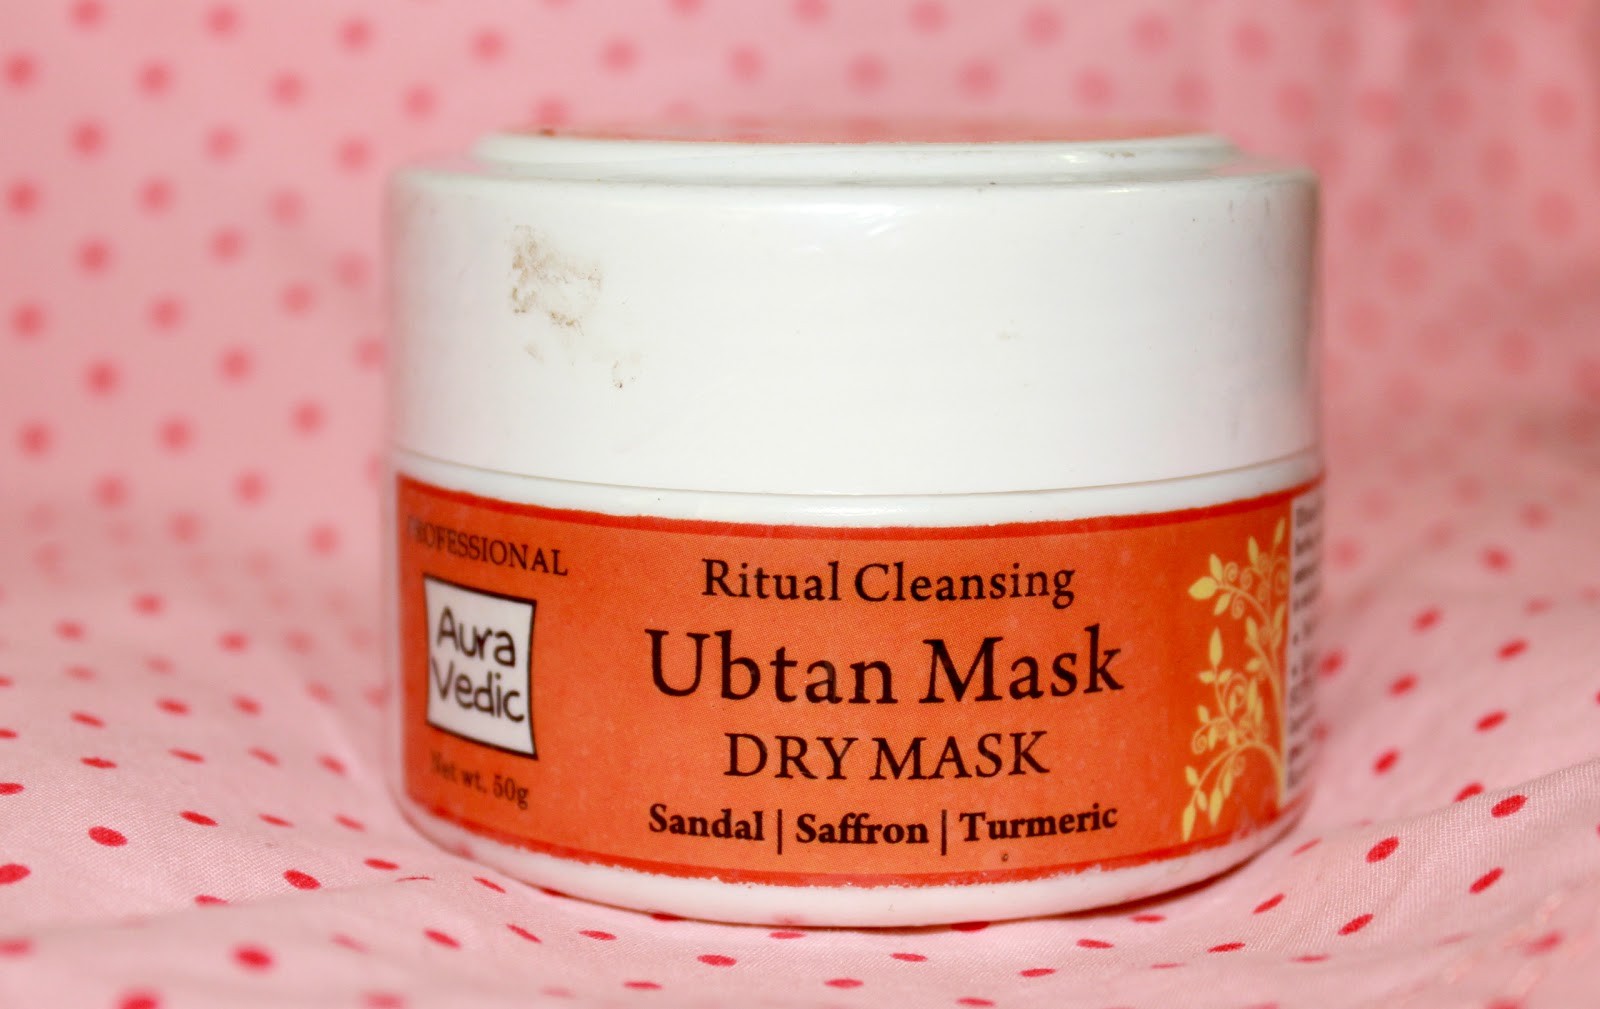 AuraVedic Ritual Cleansing Ubtan Mask